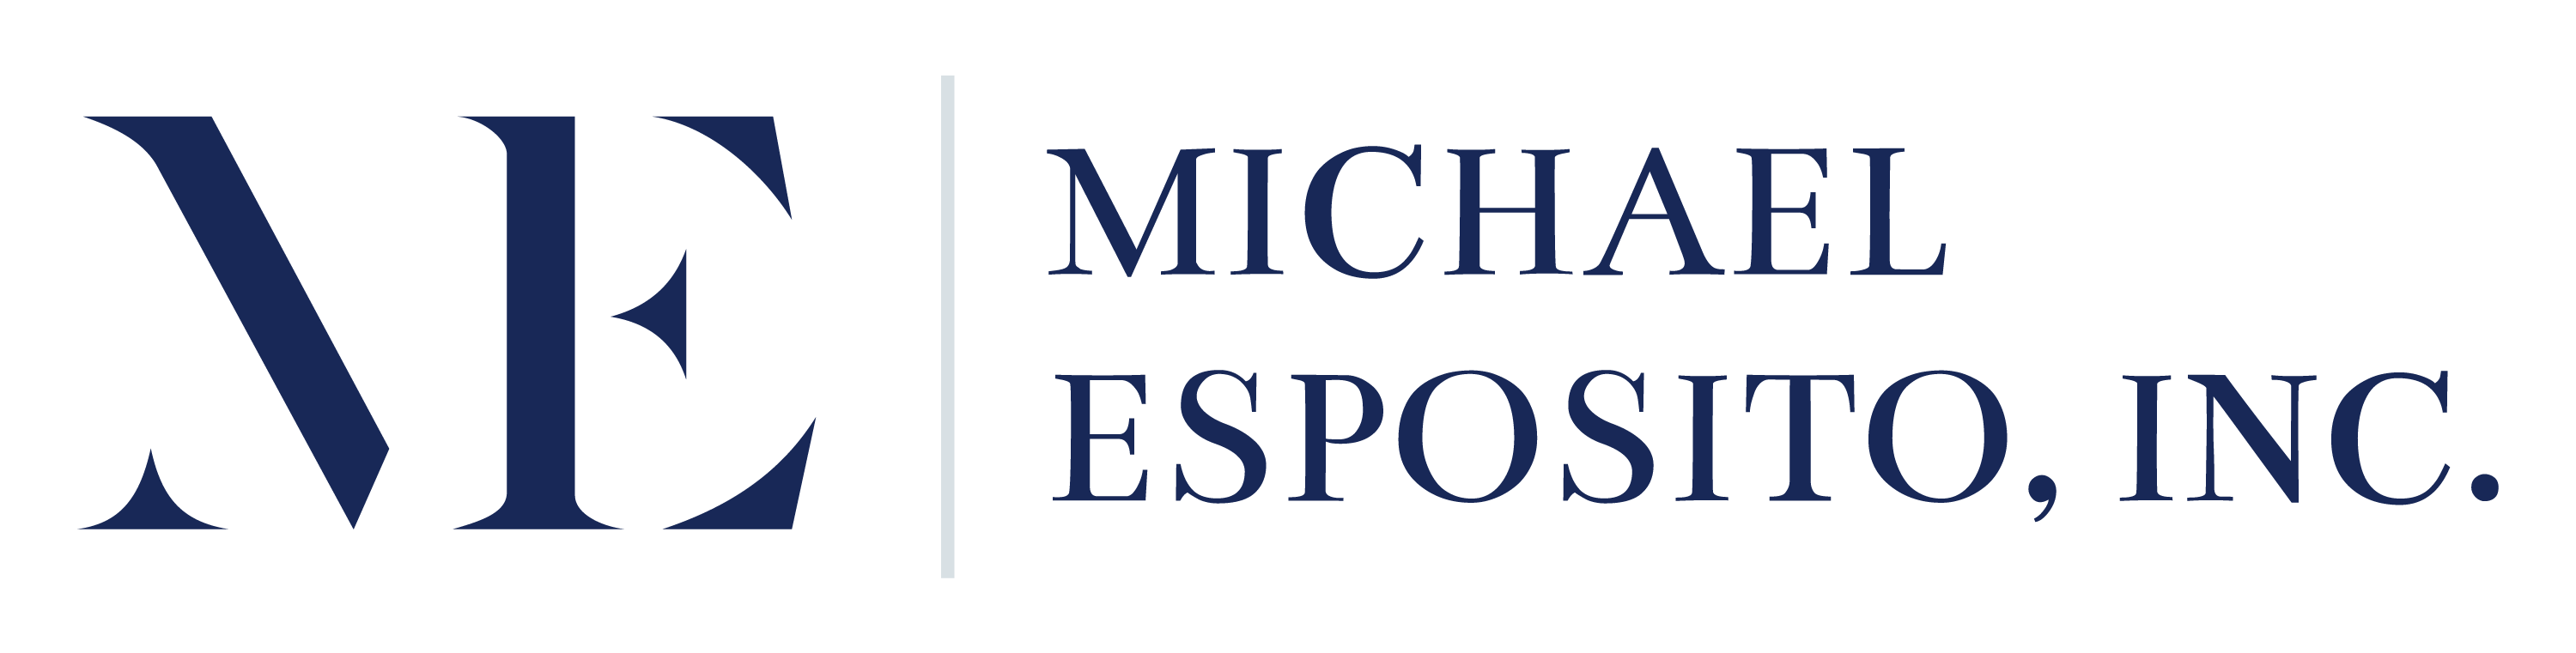 Michael Esposito, Inc. | Community-Driven Leadership